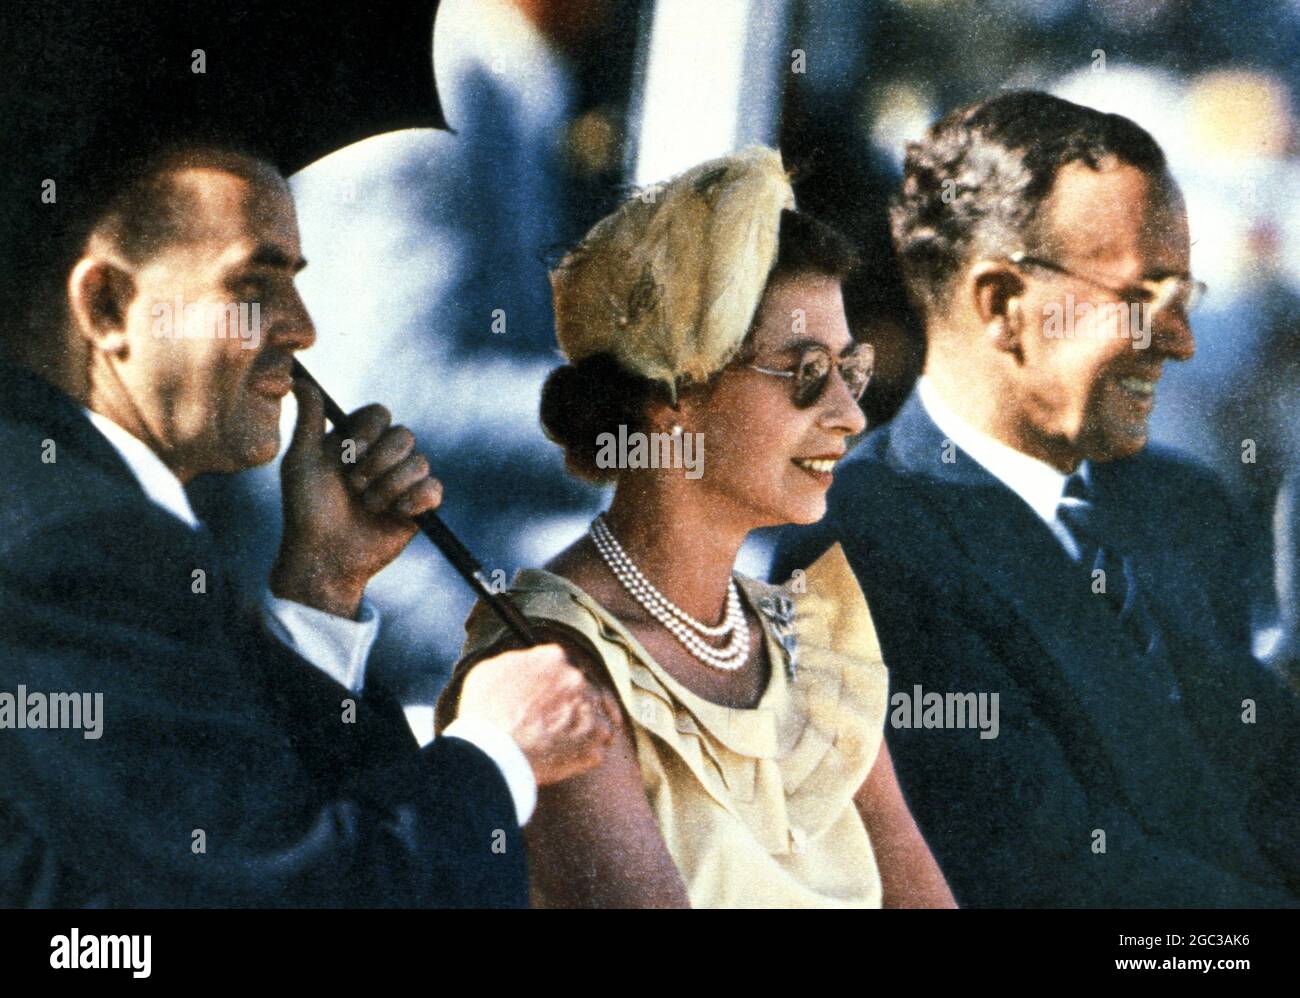 Königin Elizabeth II. (Elizabeth Alexandra Mary Windsor, geboren am 21. April 1926) auf königlicher Tournee in Australien im Jahr 1954 - ©TopFoto Stockfoto